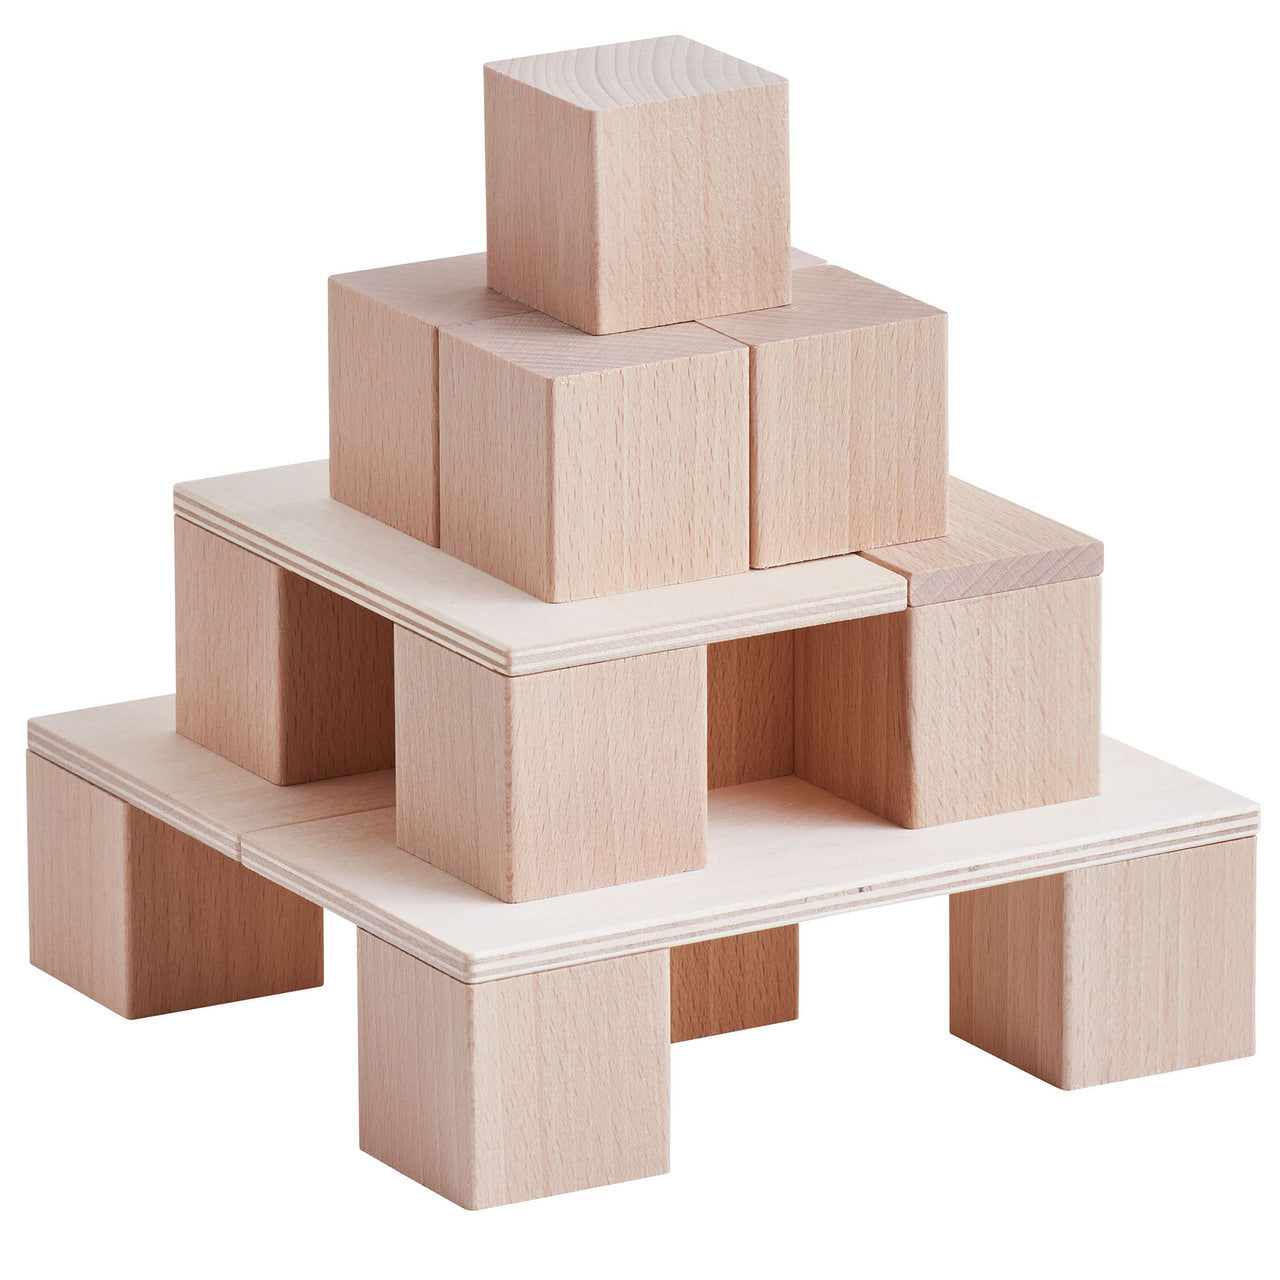 HABA Clever Up! Système de blocs de construction 2.0 